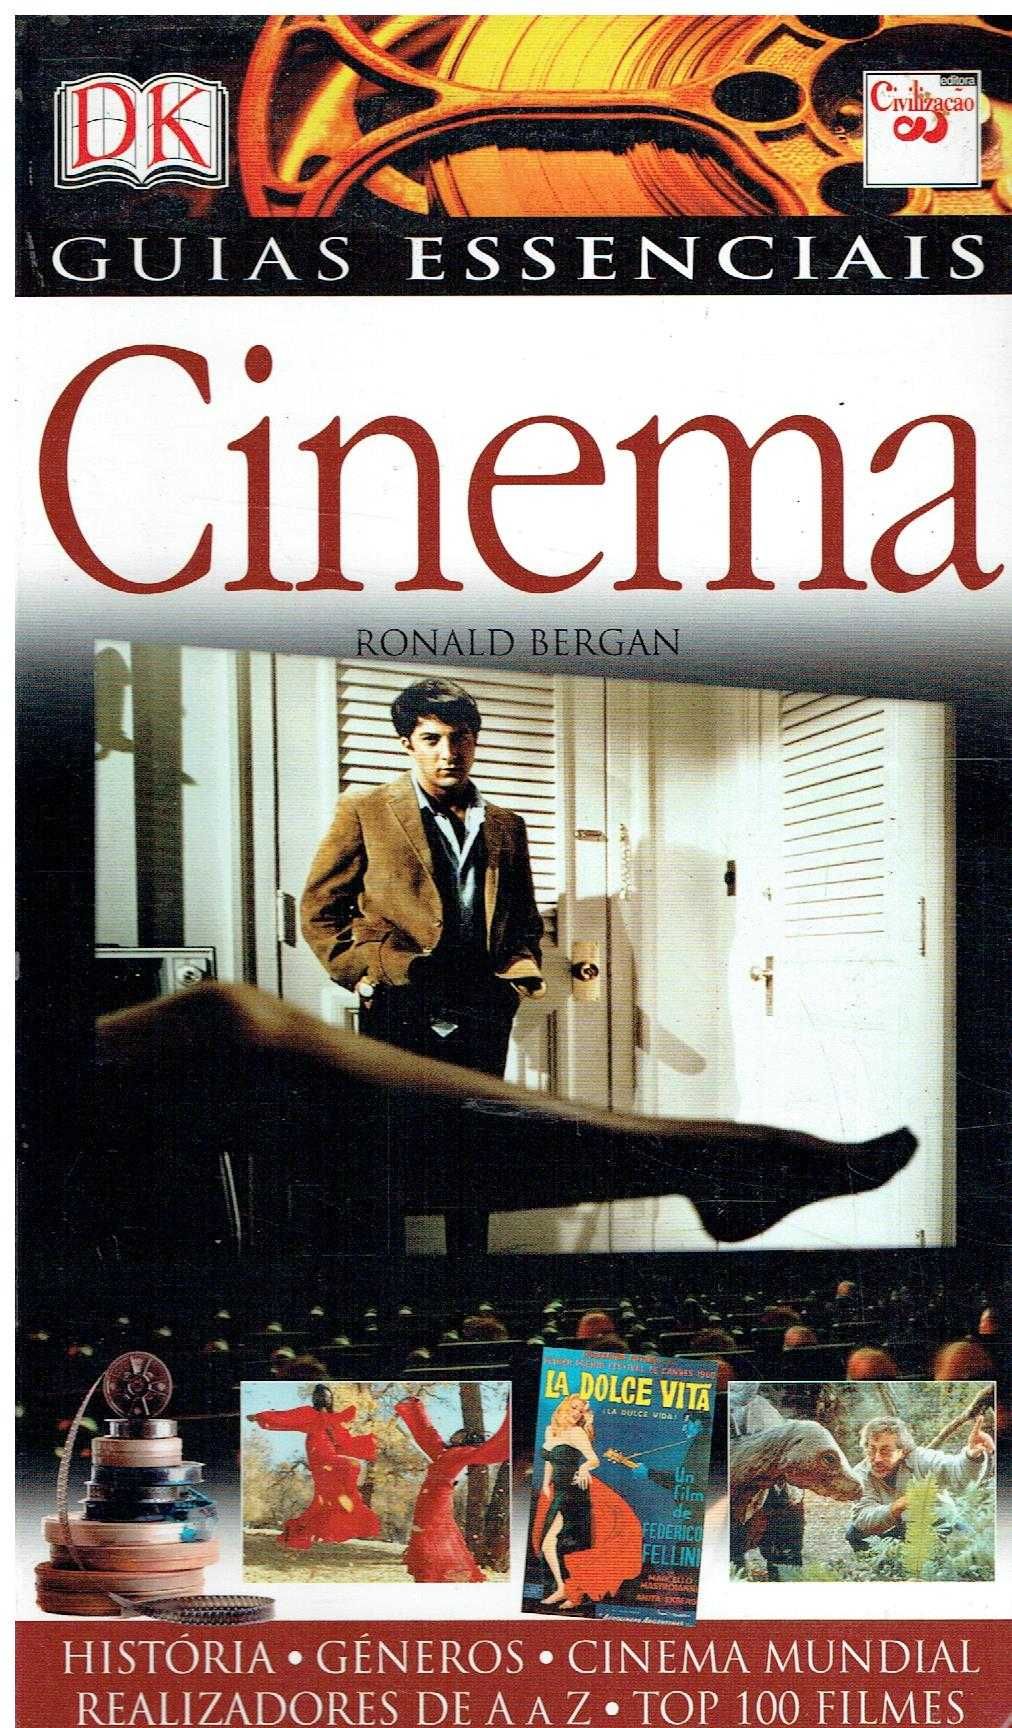 1033

Guias Essenciais: Cinema
de Ronald Bergan